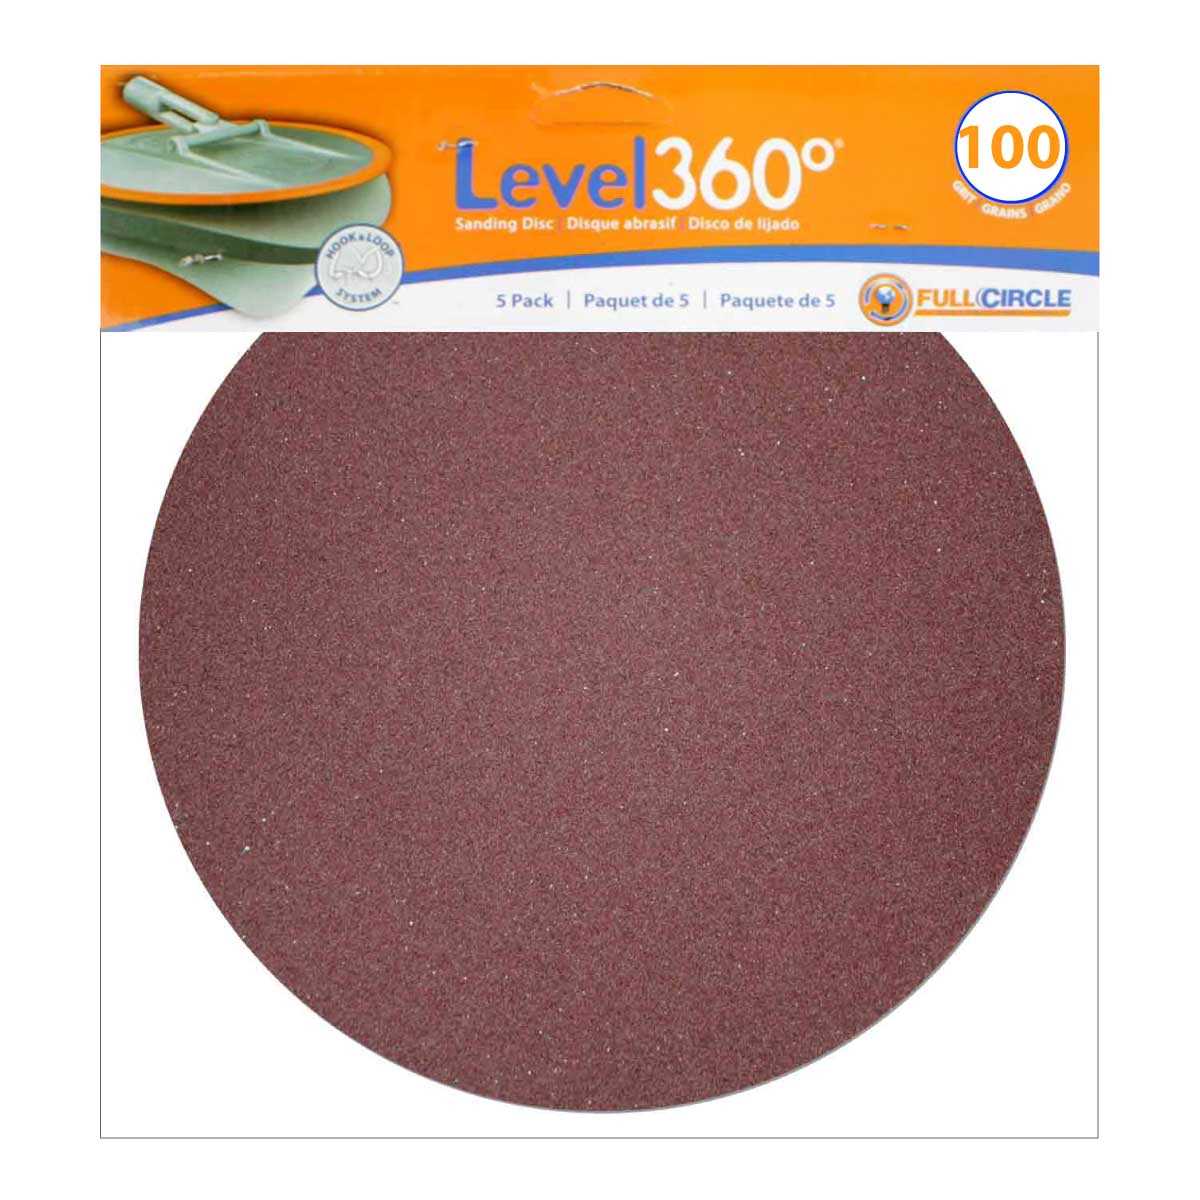 Level 360 Sanding Discs 100